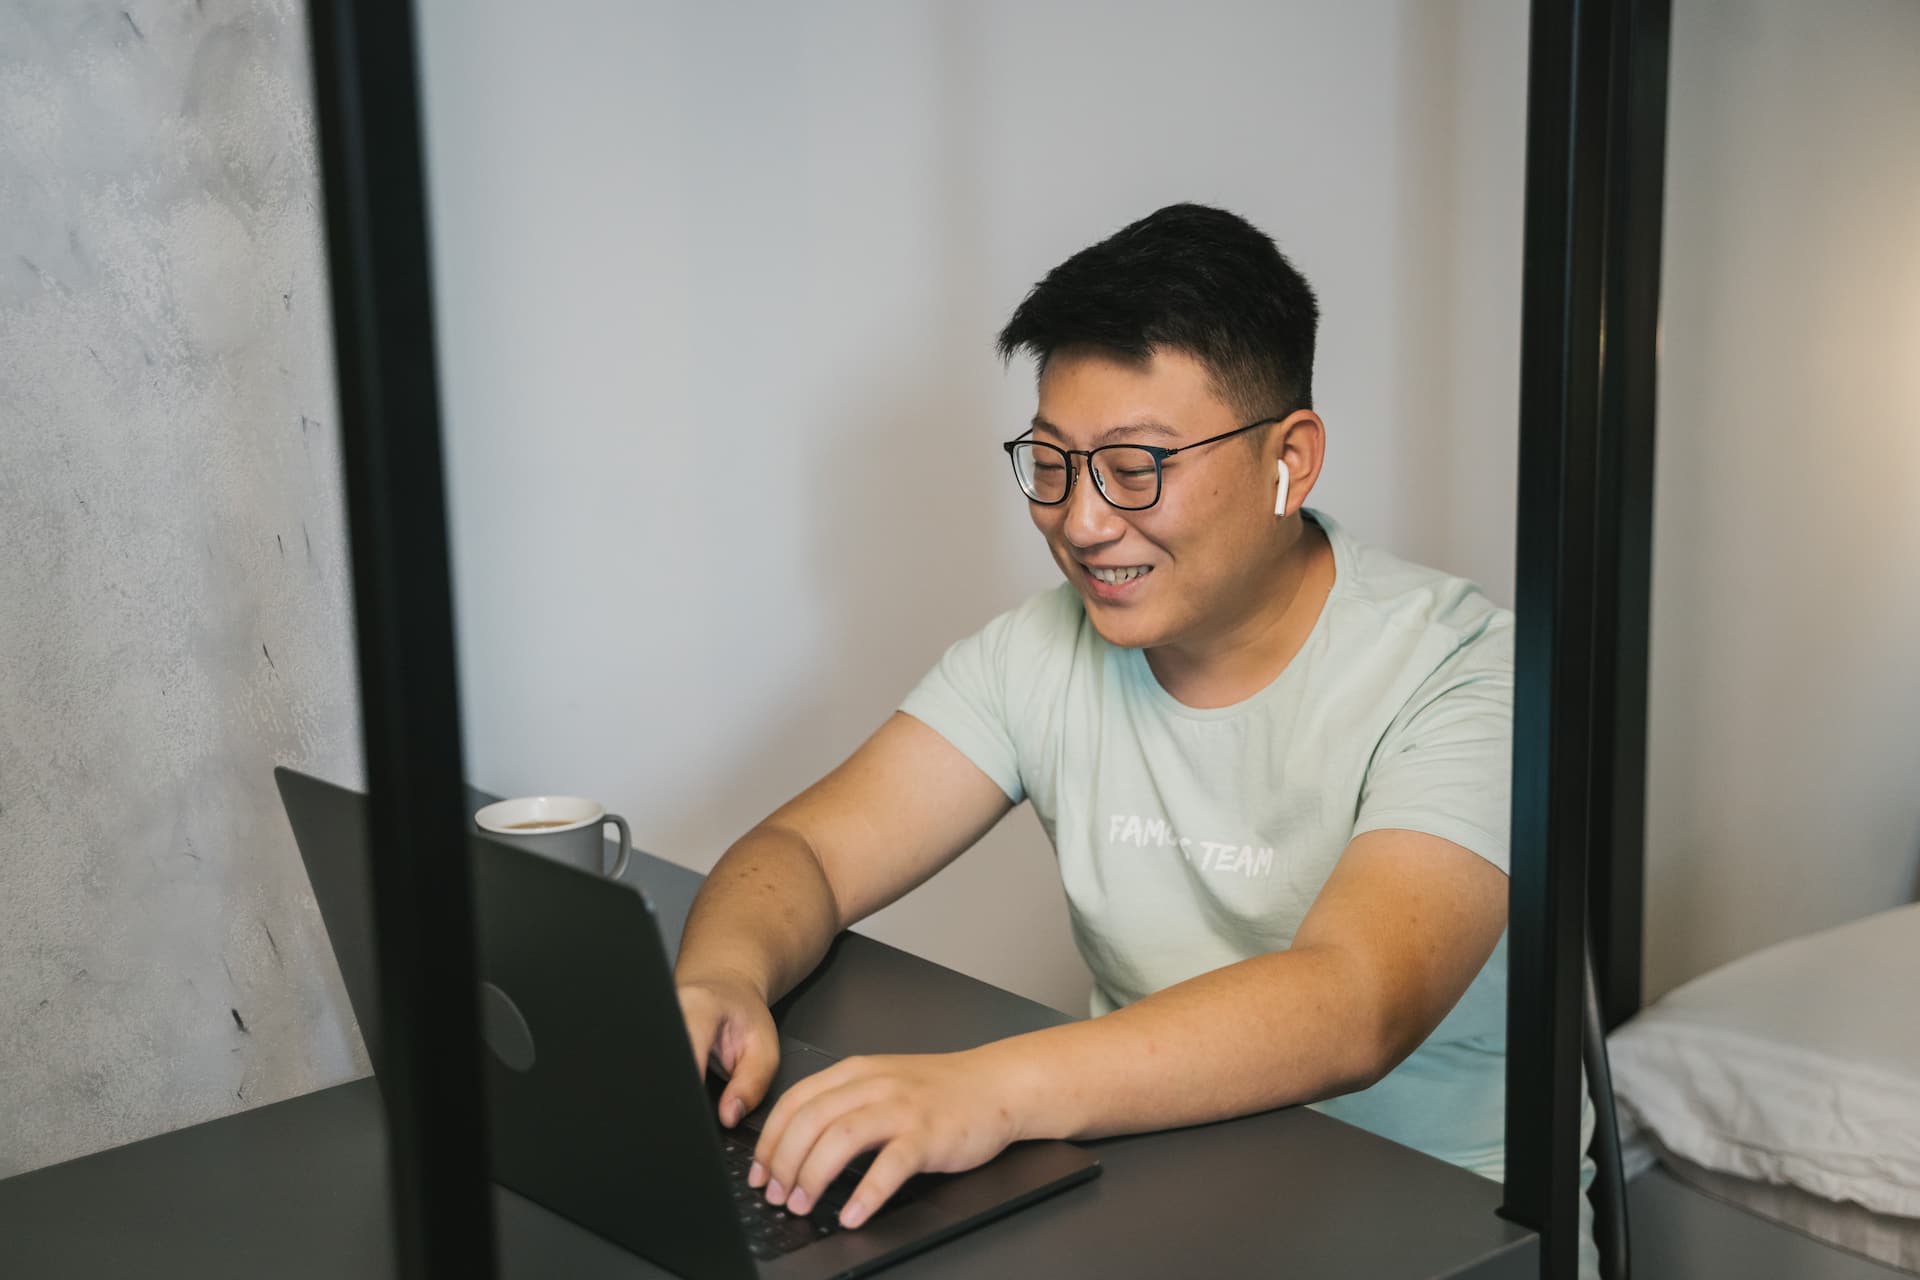 Guy smiling at laptop